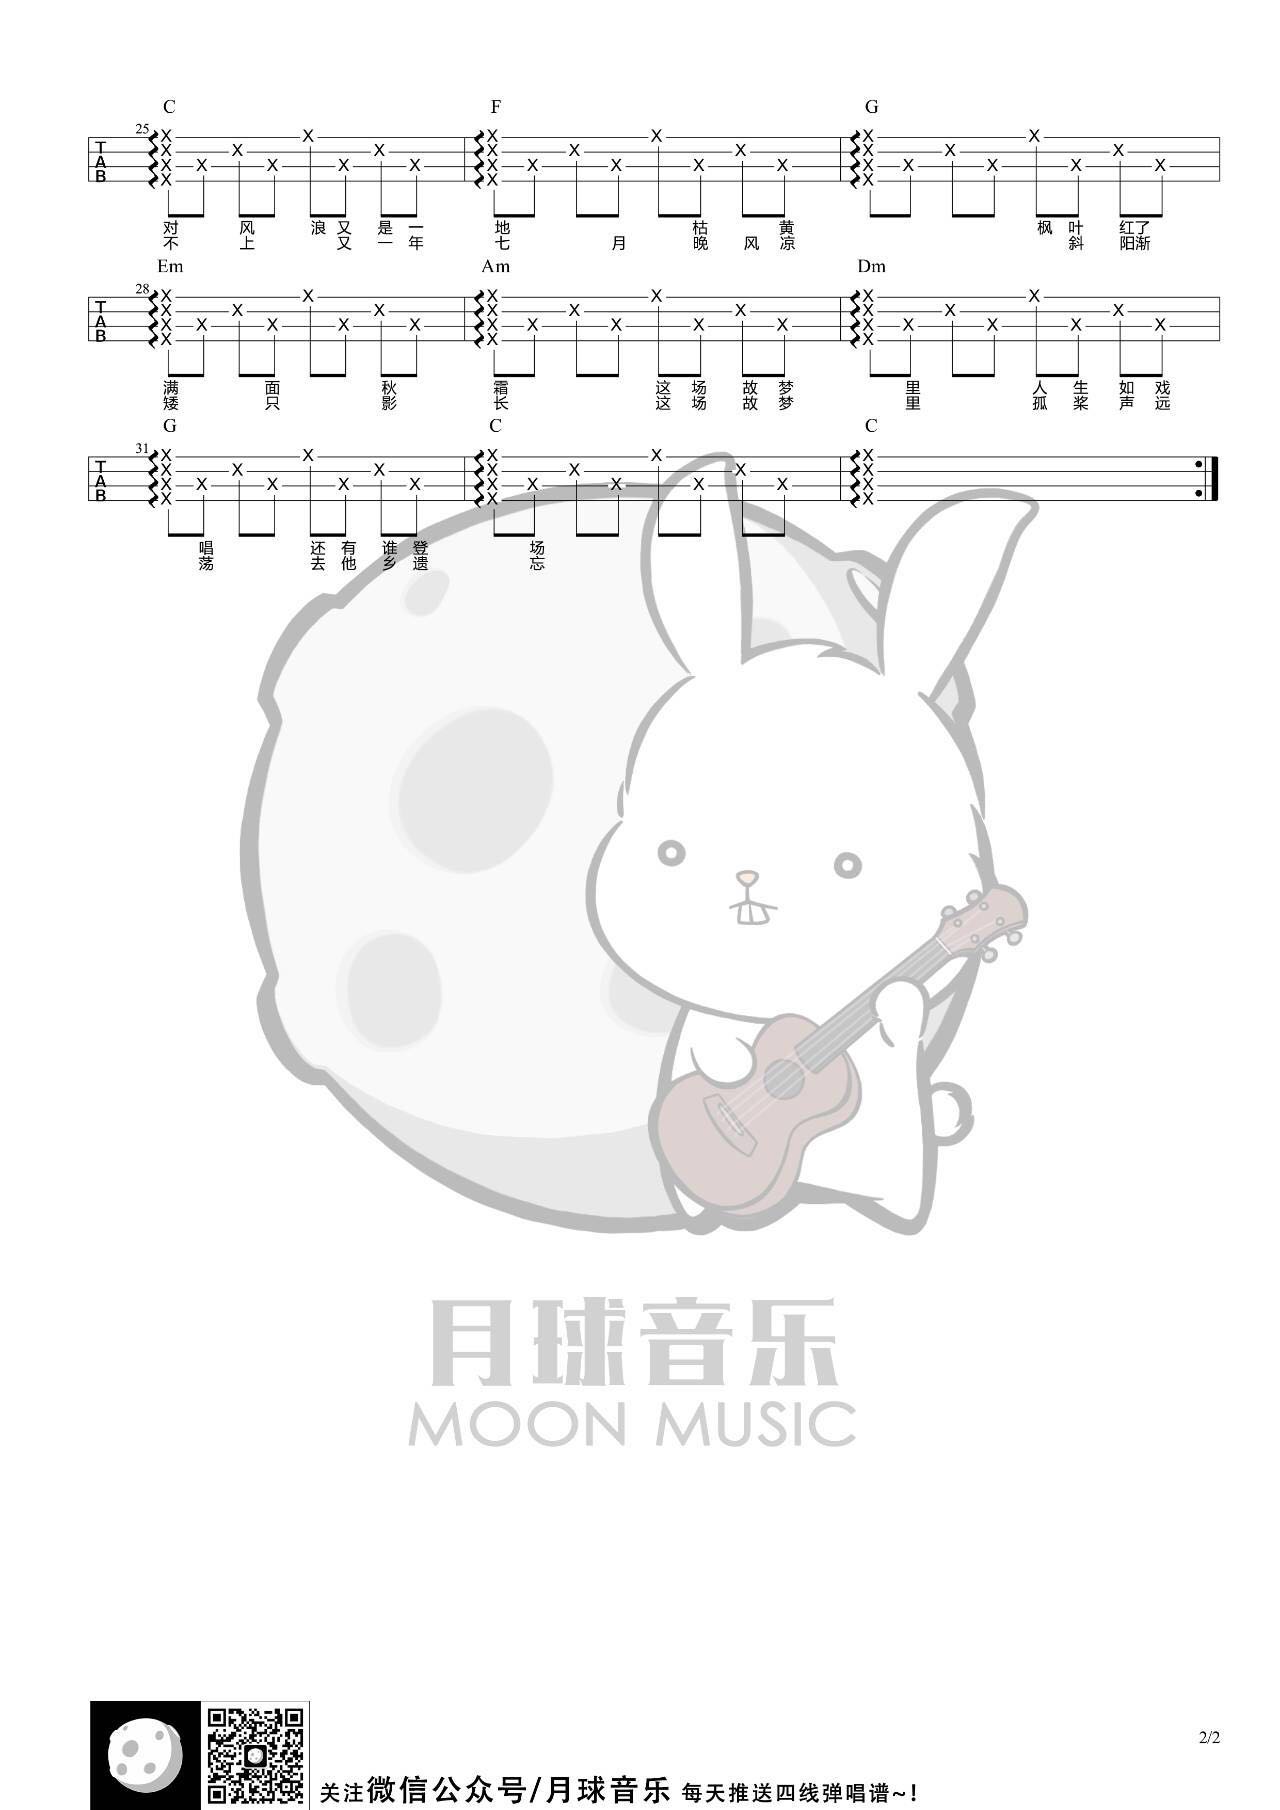 墨明棋妙《故梦》尤克里里谱-Ukulele Music Score